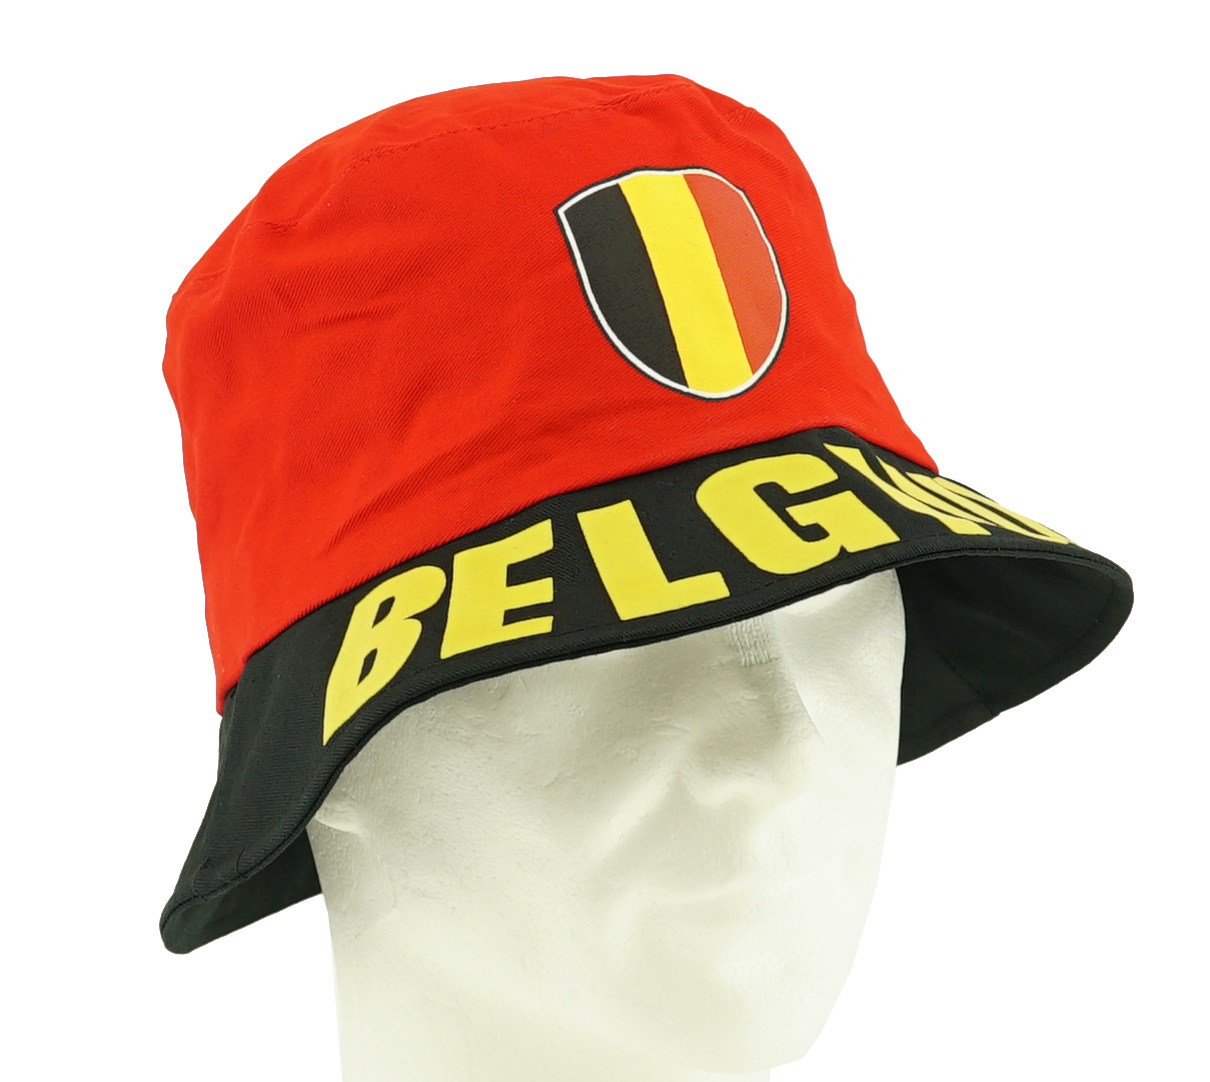 Buy Bucket hat Belgium? -